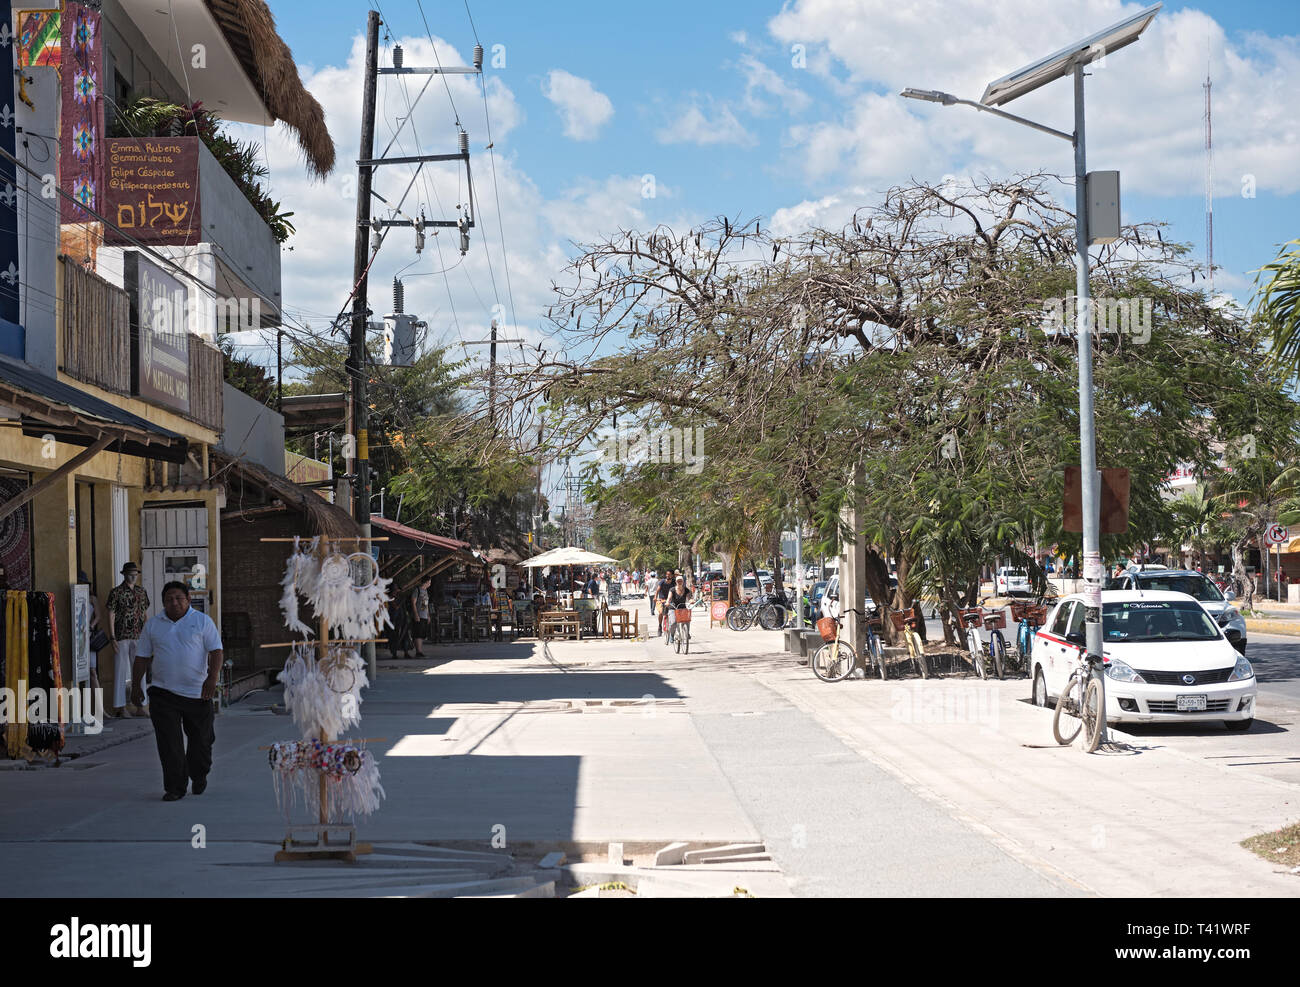 main street at tulum quintana roo mexico Stock Photo